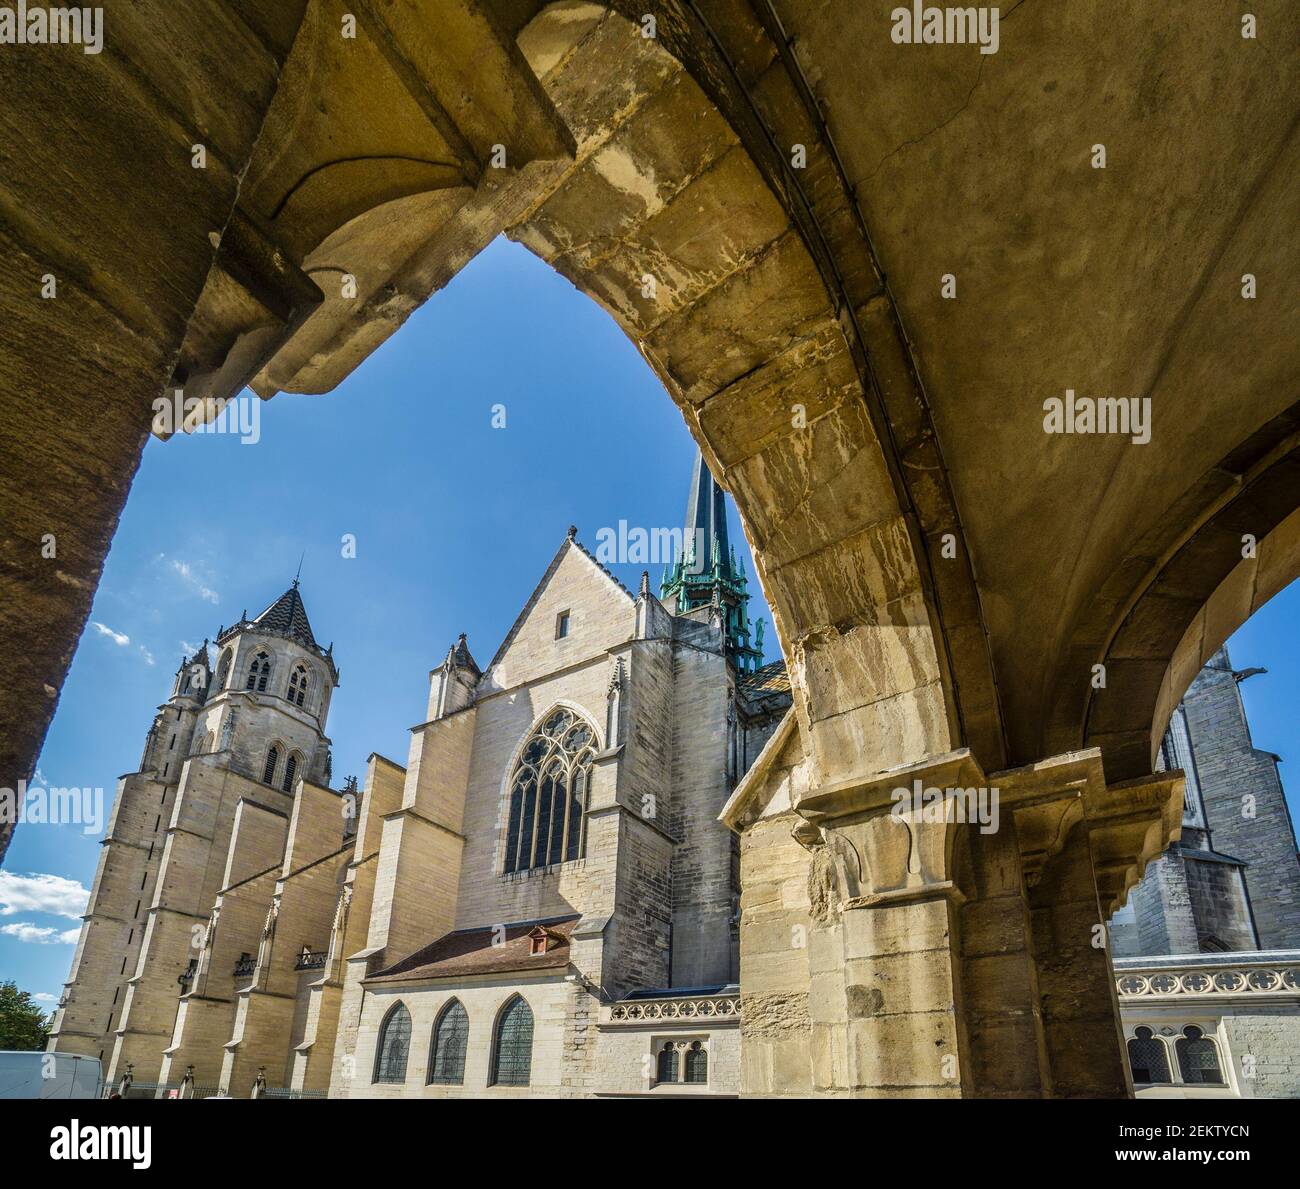 Cattedrale gotica di Digione, Digione, Burgandy, dipartimento Côte-d'Or, regione Borgogna-Francia-Comté, Francia Foto Stock